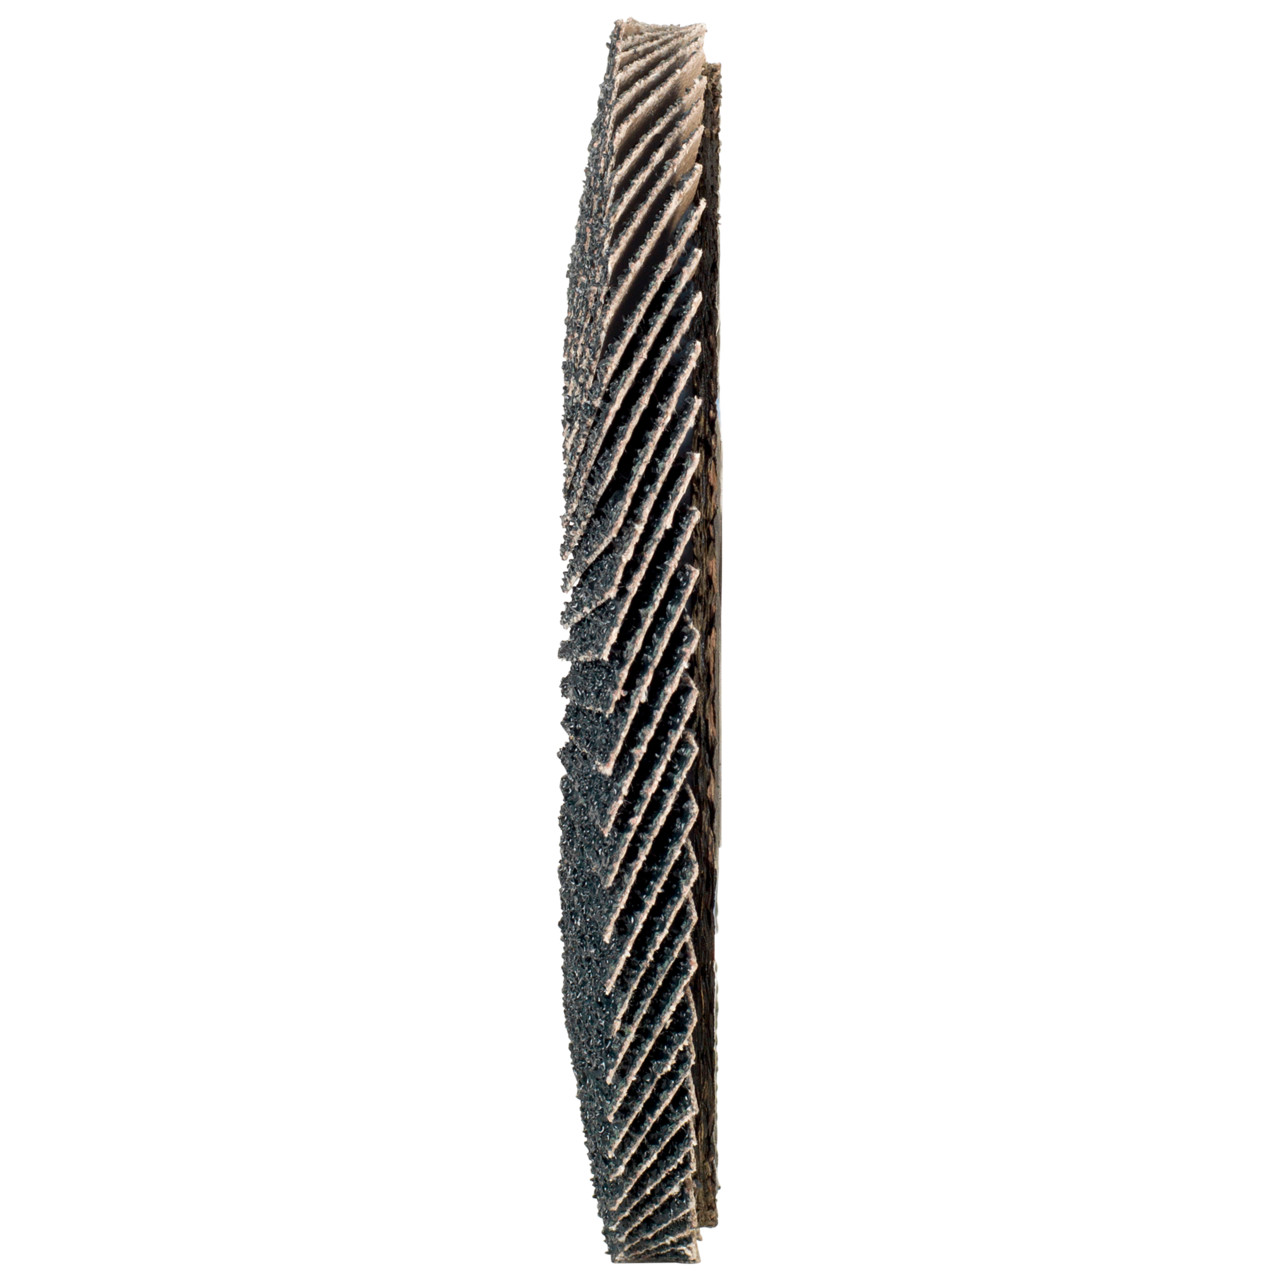 Rondella dentata Tyrolit DxH 115x22.2 2in1 per acciaio e acciaio inox, P40, forma: 28A - versione diritto (versione con corpo portante in fibra di vetro), Art. 668686